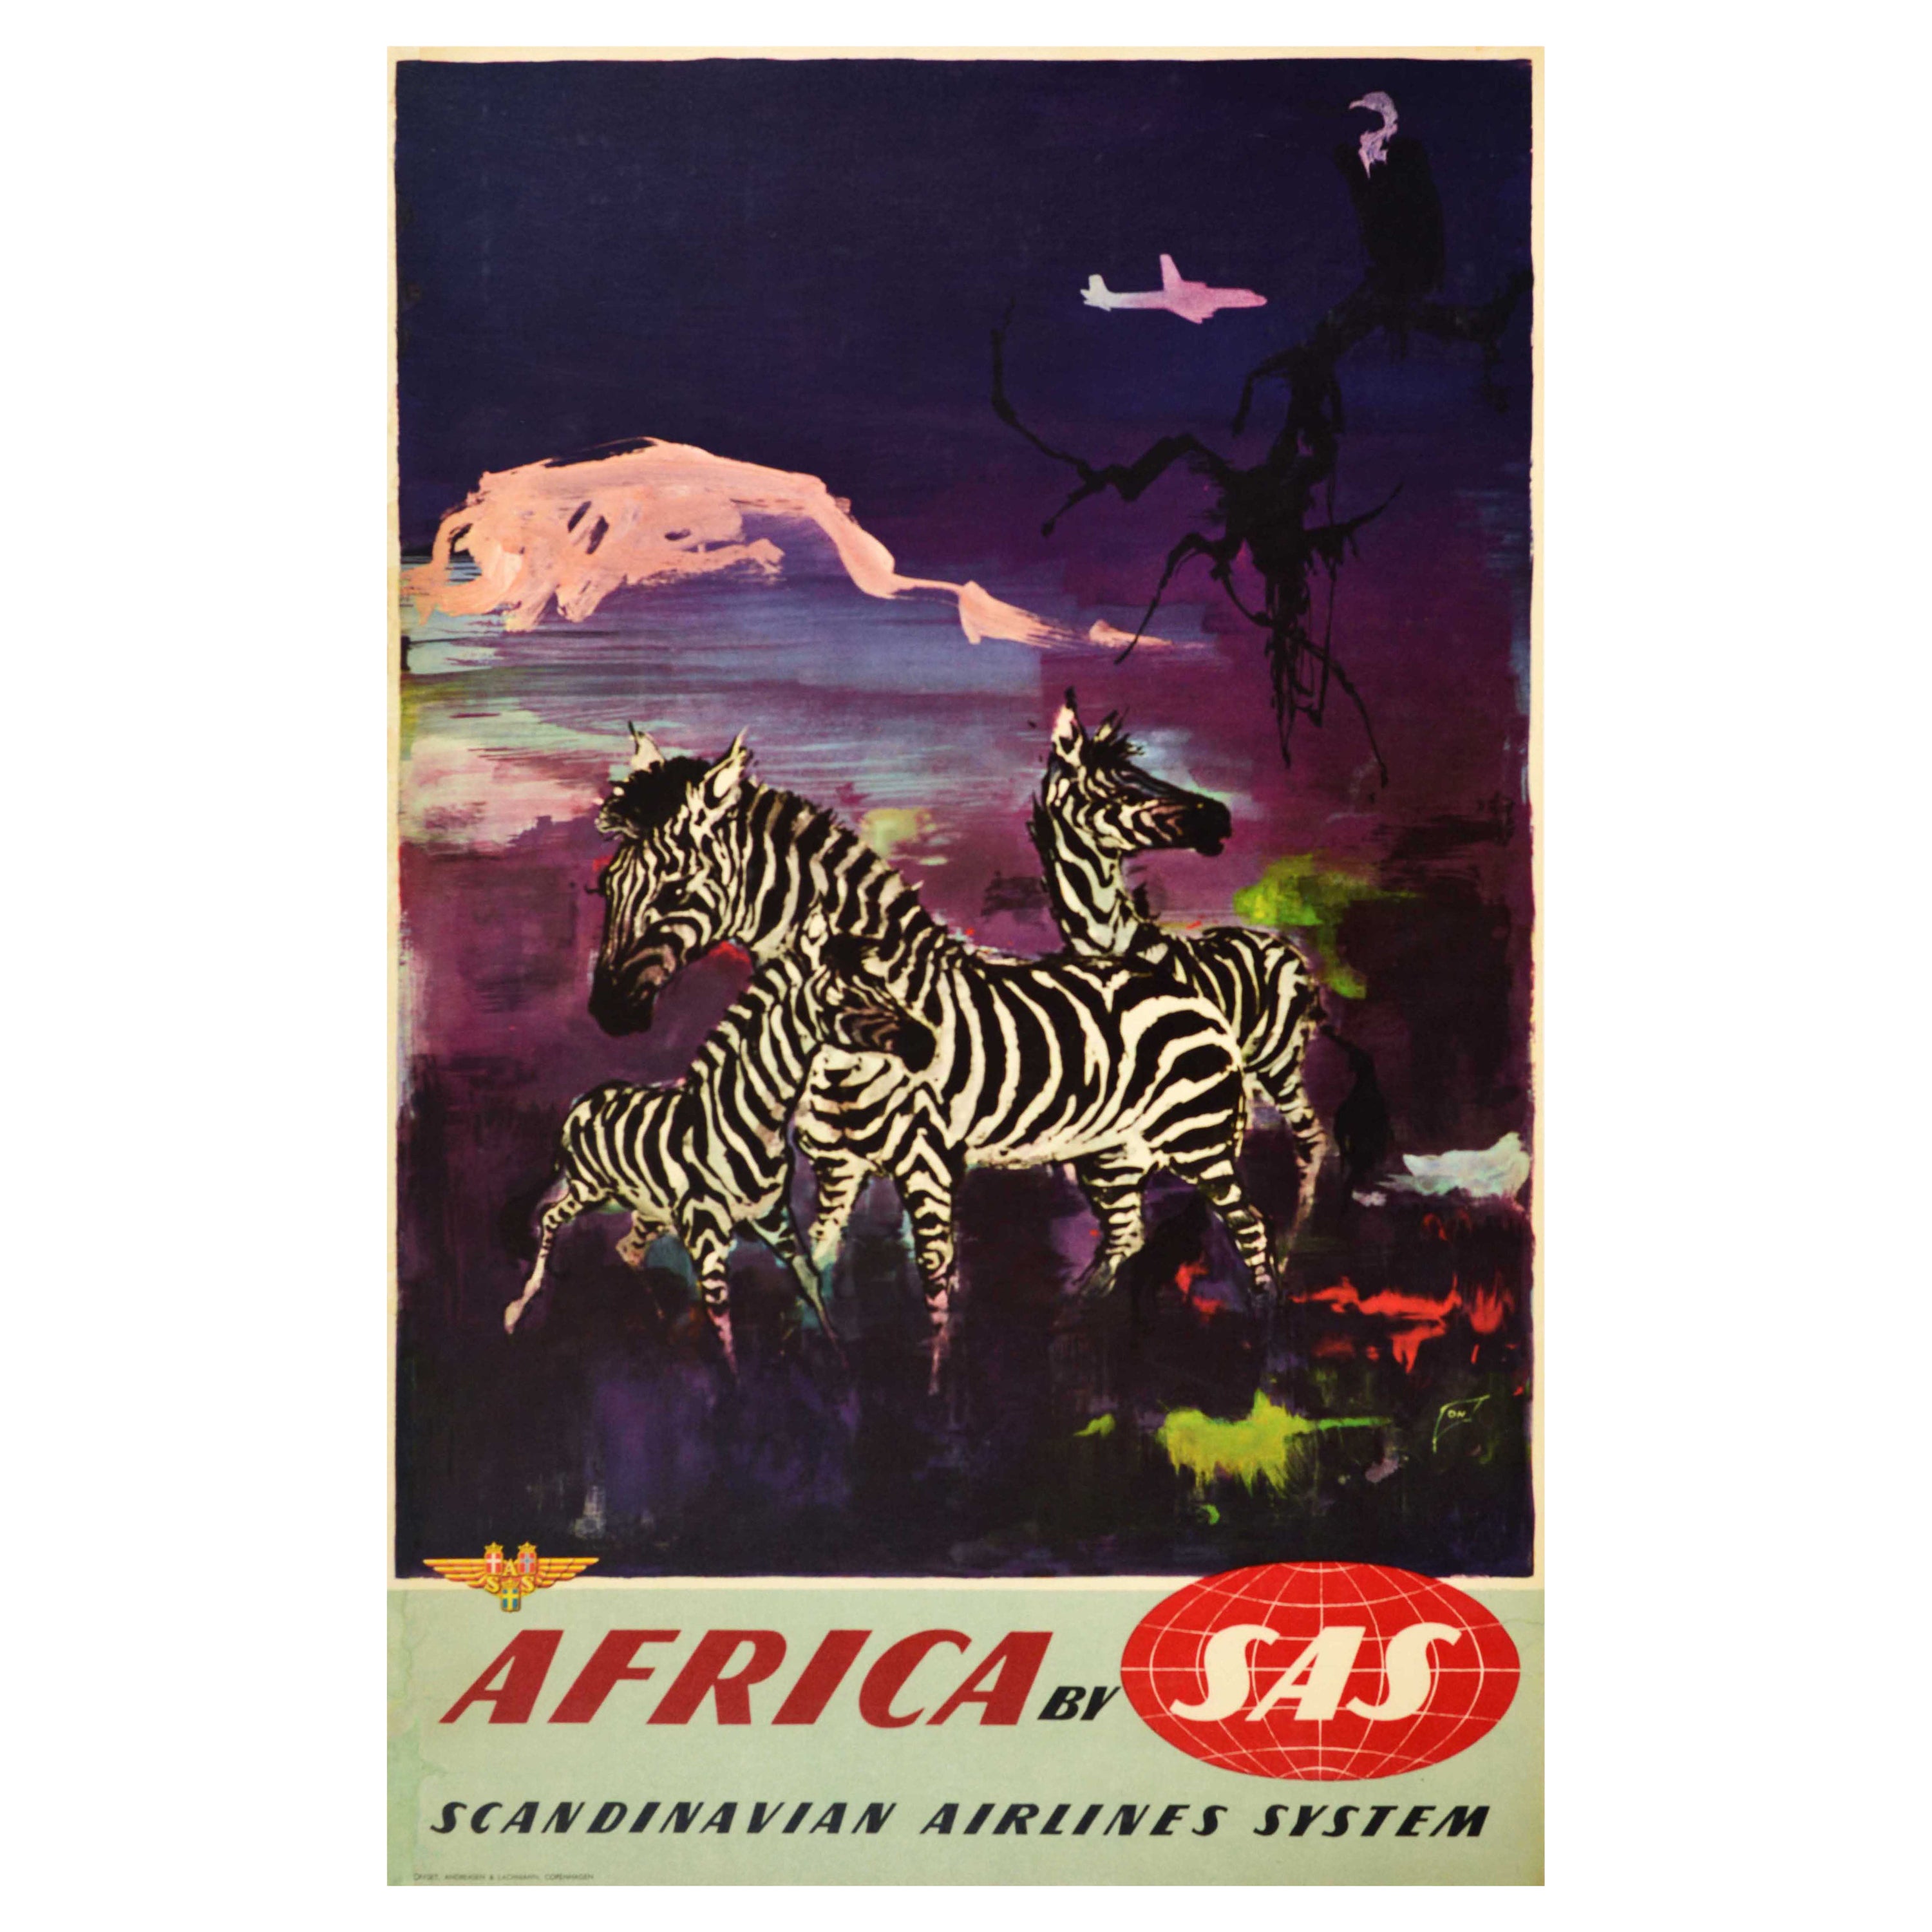 Affiche rétro originale de voyage, Africa, SAS, Compagnie aérienne scandinave, Zebra Art